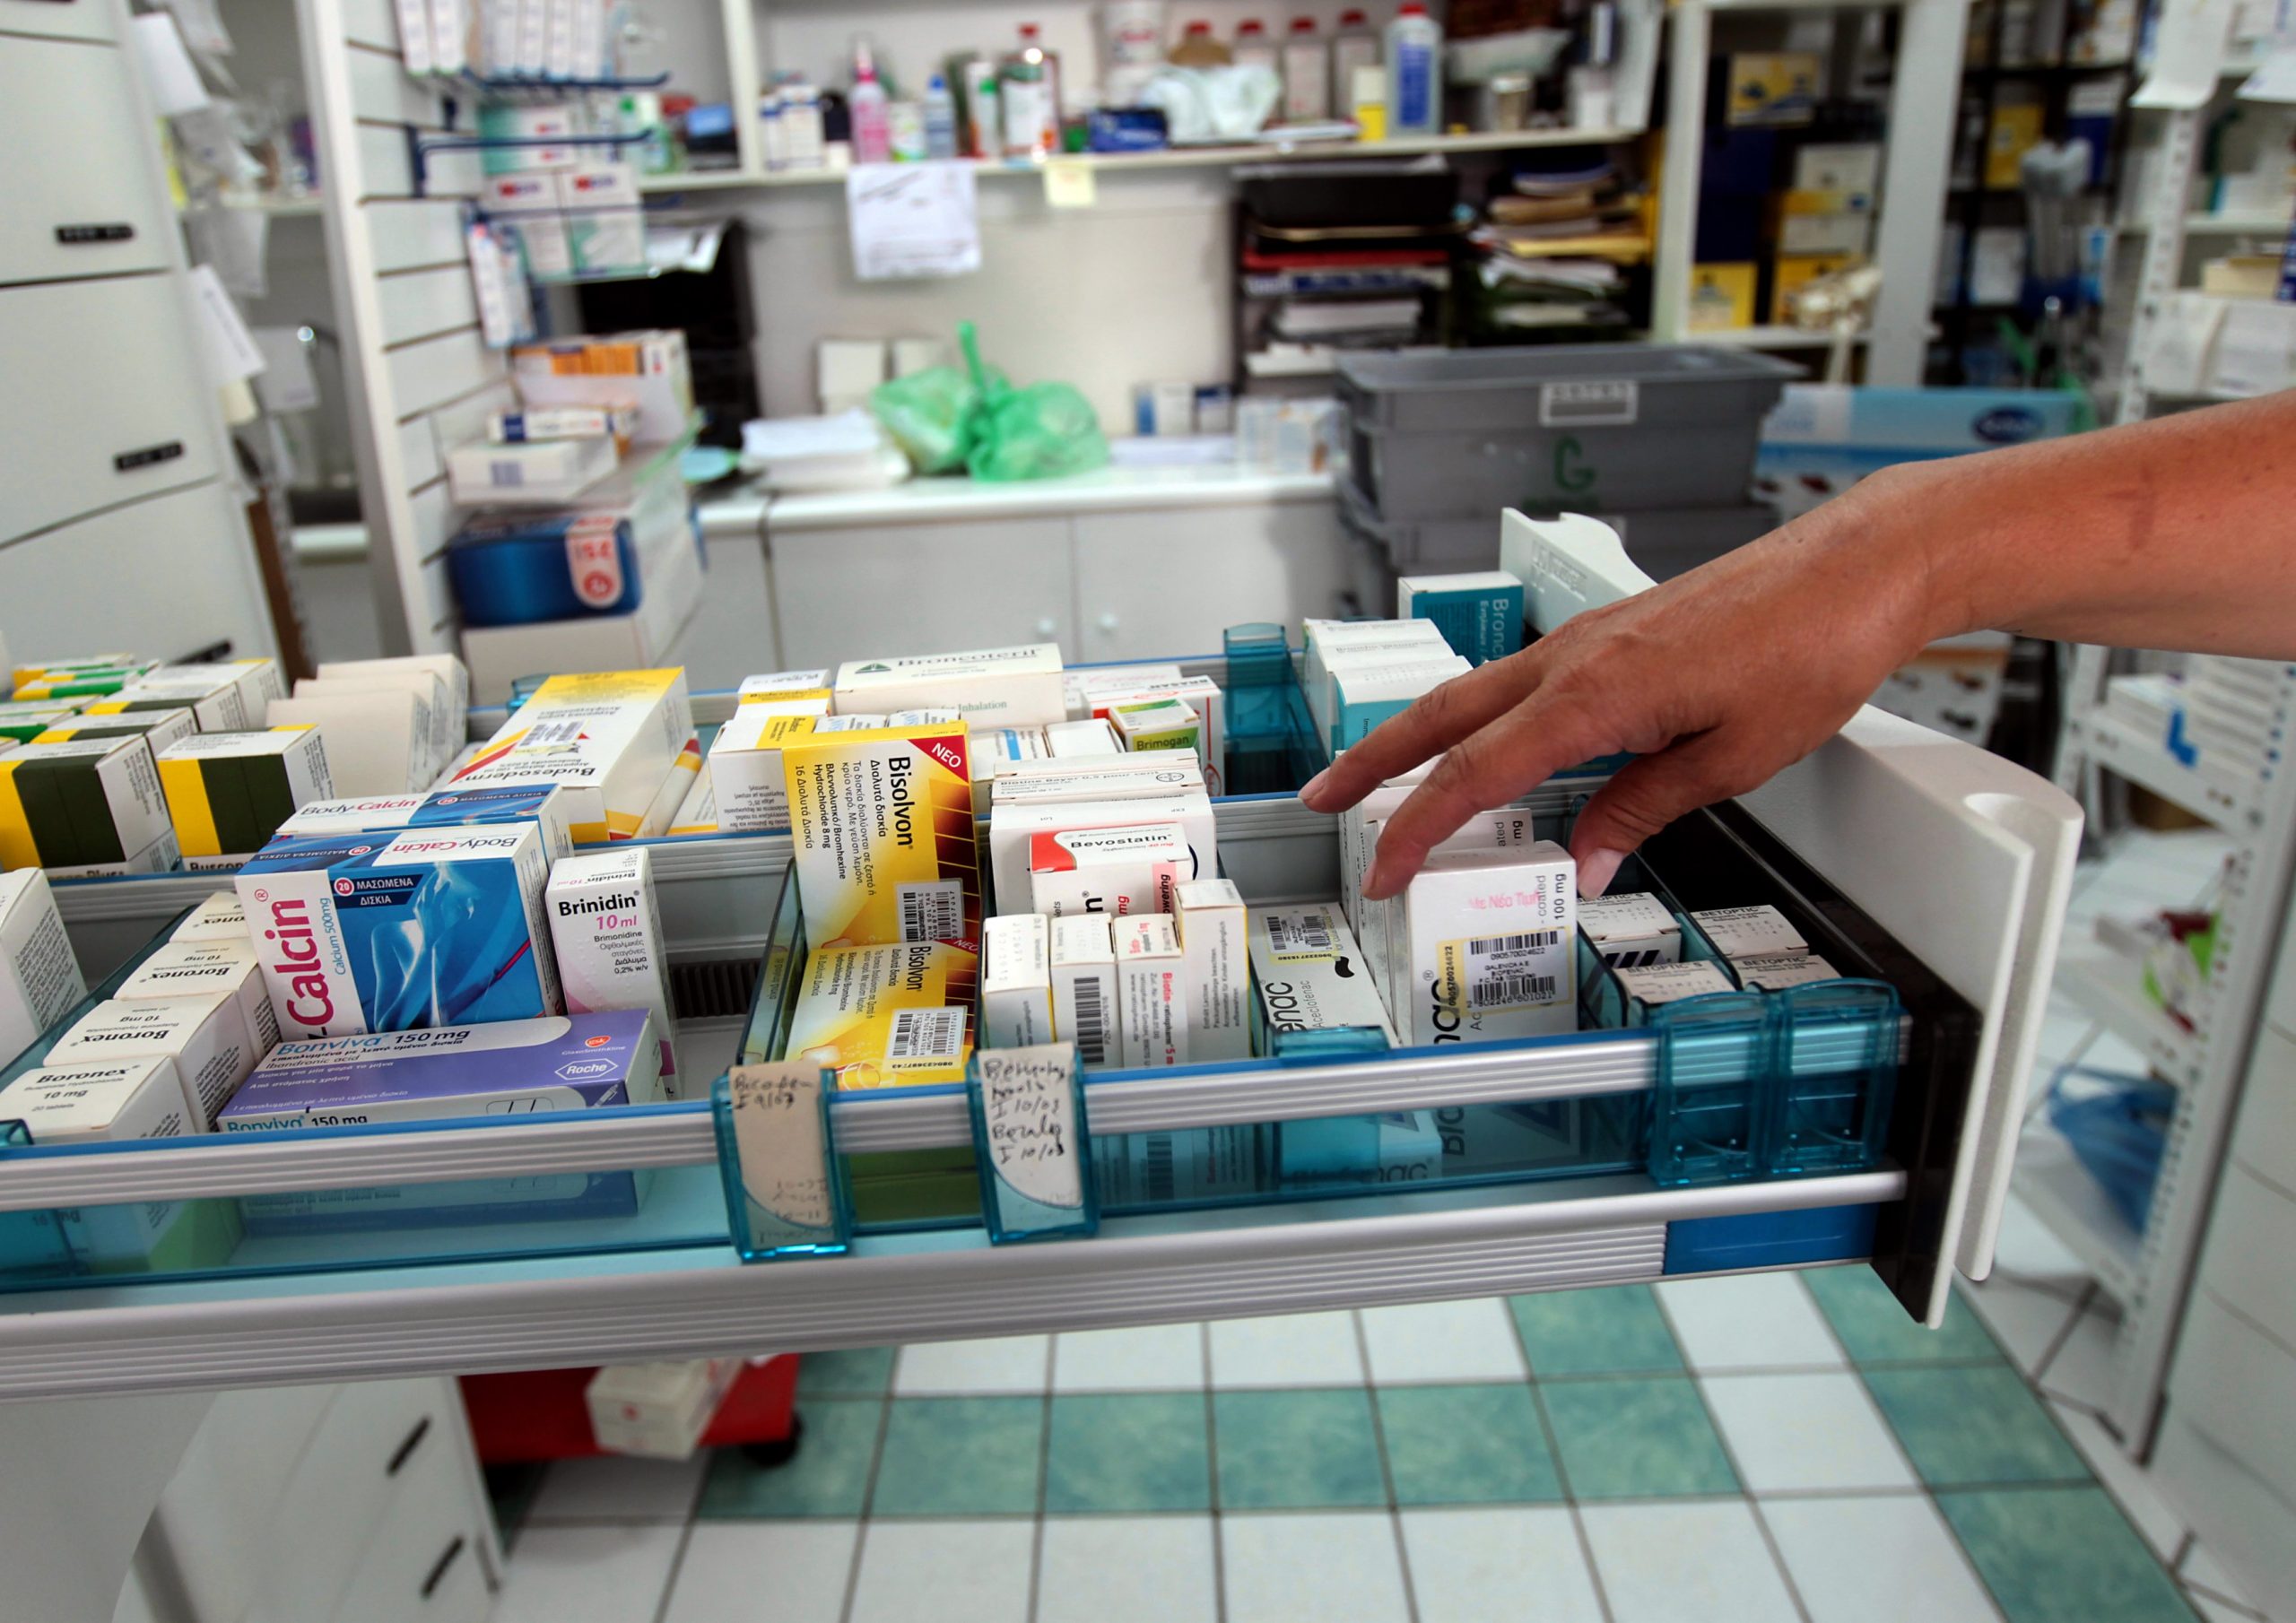 Σοβαρές ελλείψεις φαρμάκων στη χώρα μας σύμφωνα με επίσημα στοιχεία του ΕΟΦ